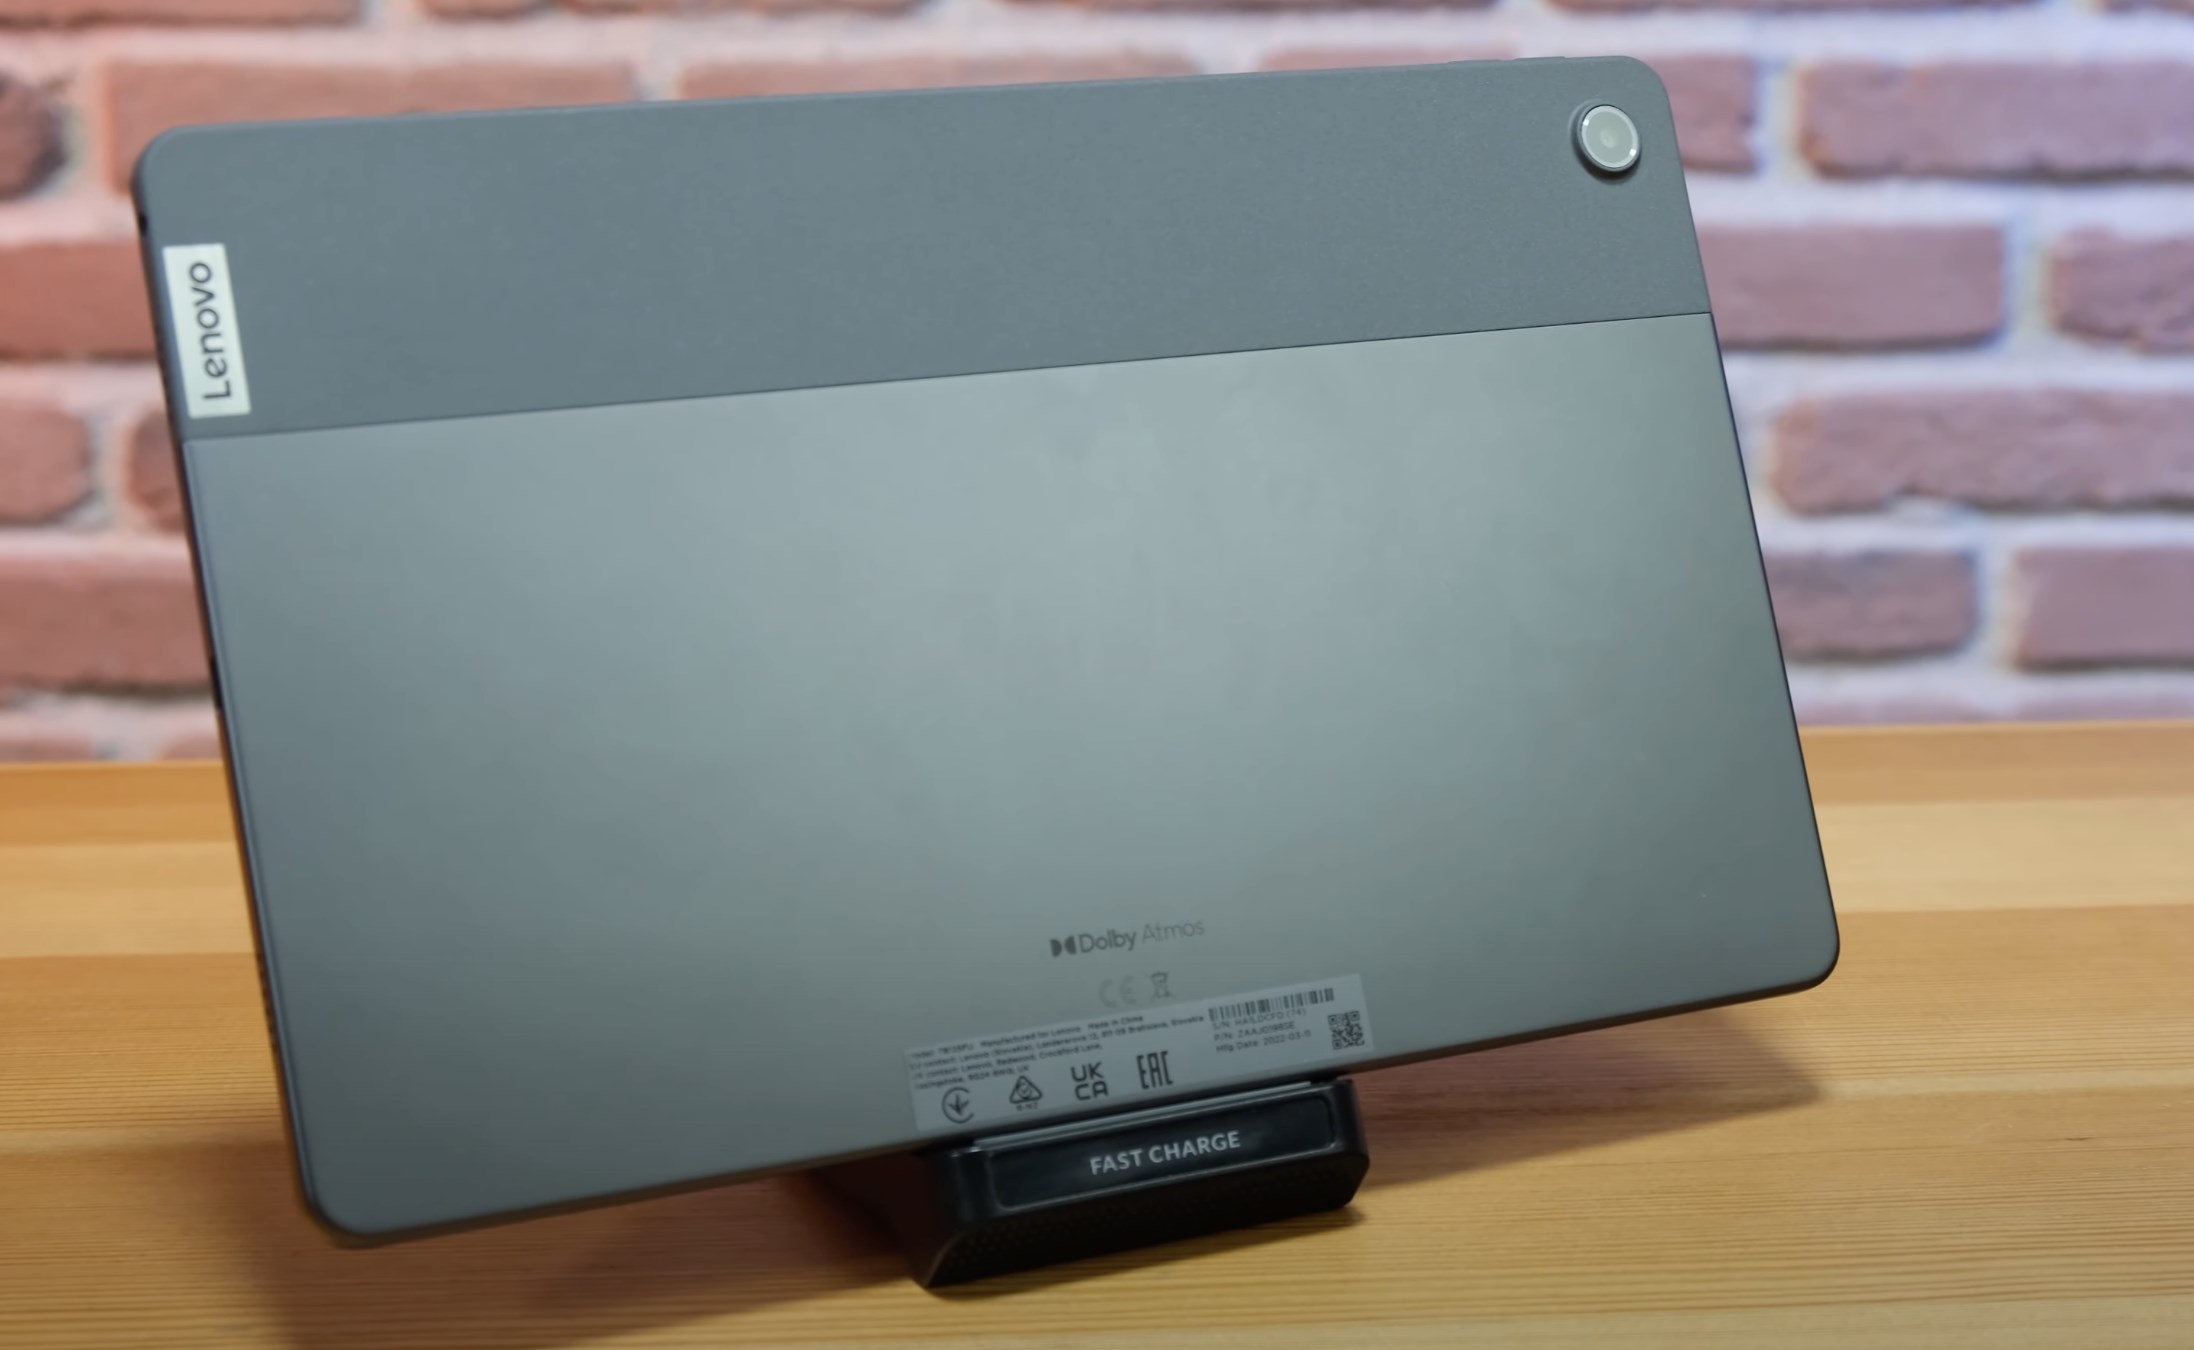 Medya tüketimi odaklı tablet - Lenovo Tab M10 Plus 3.Nesil